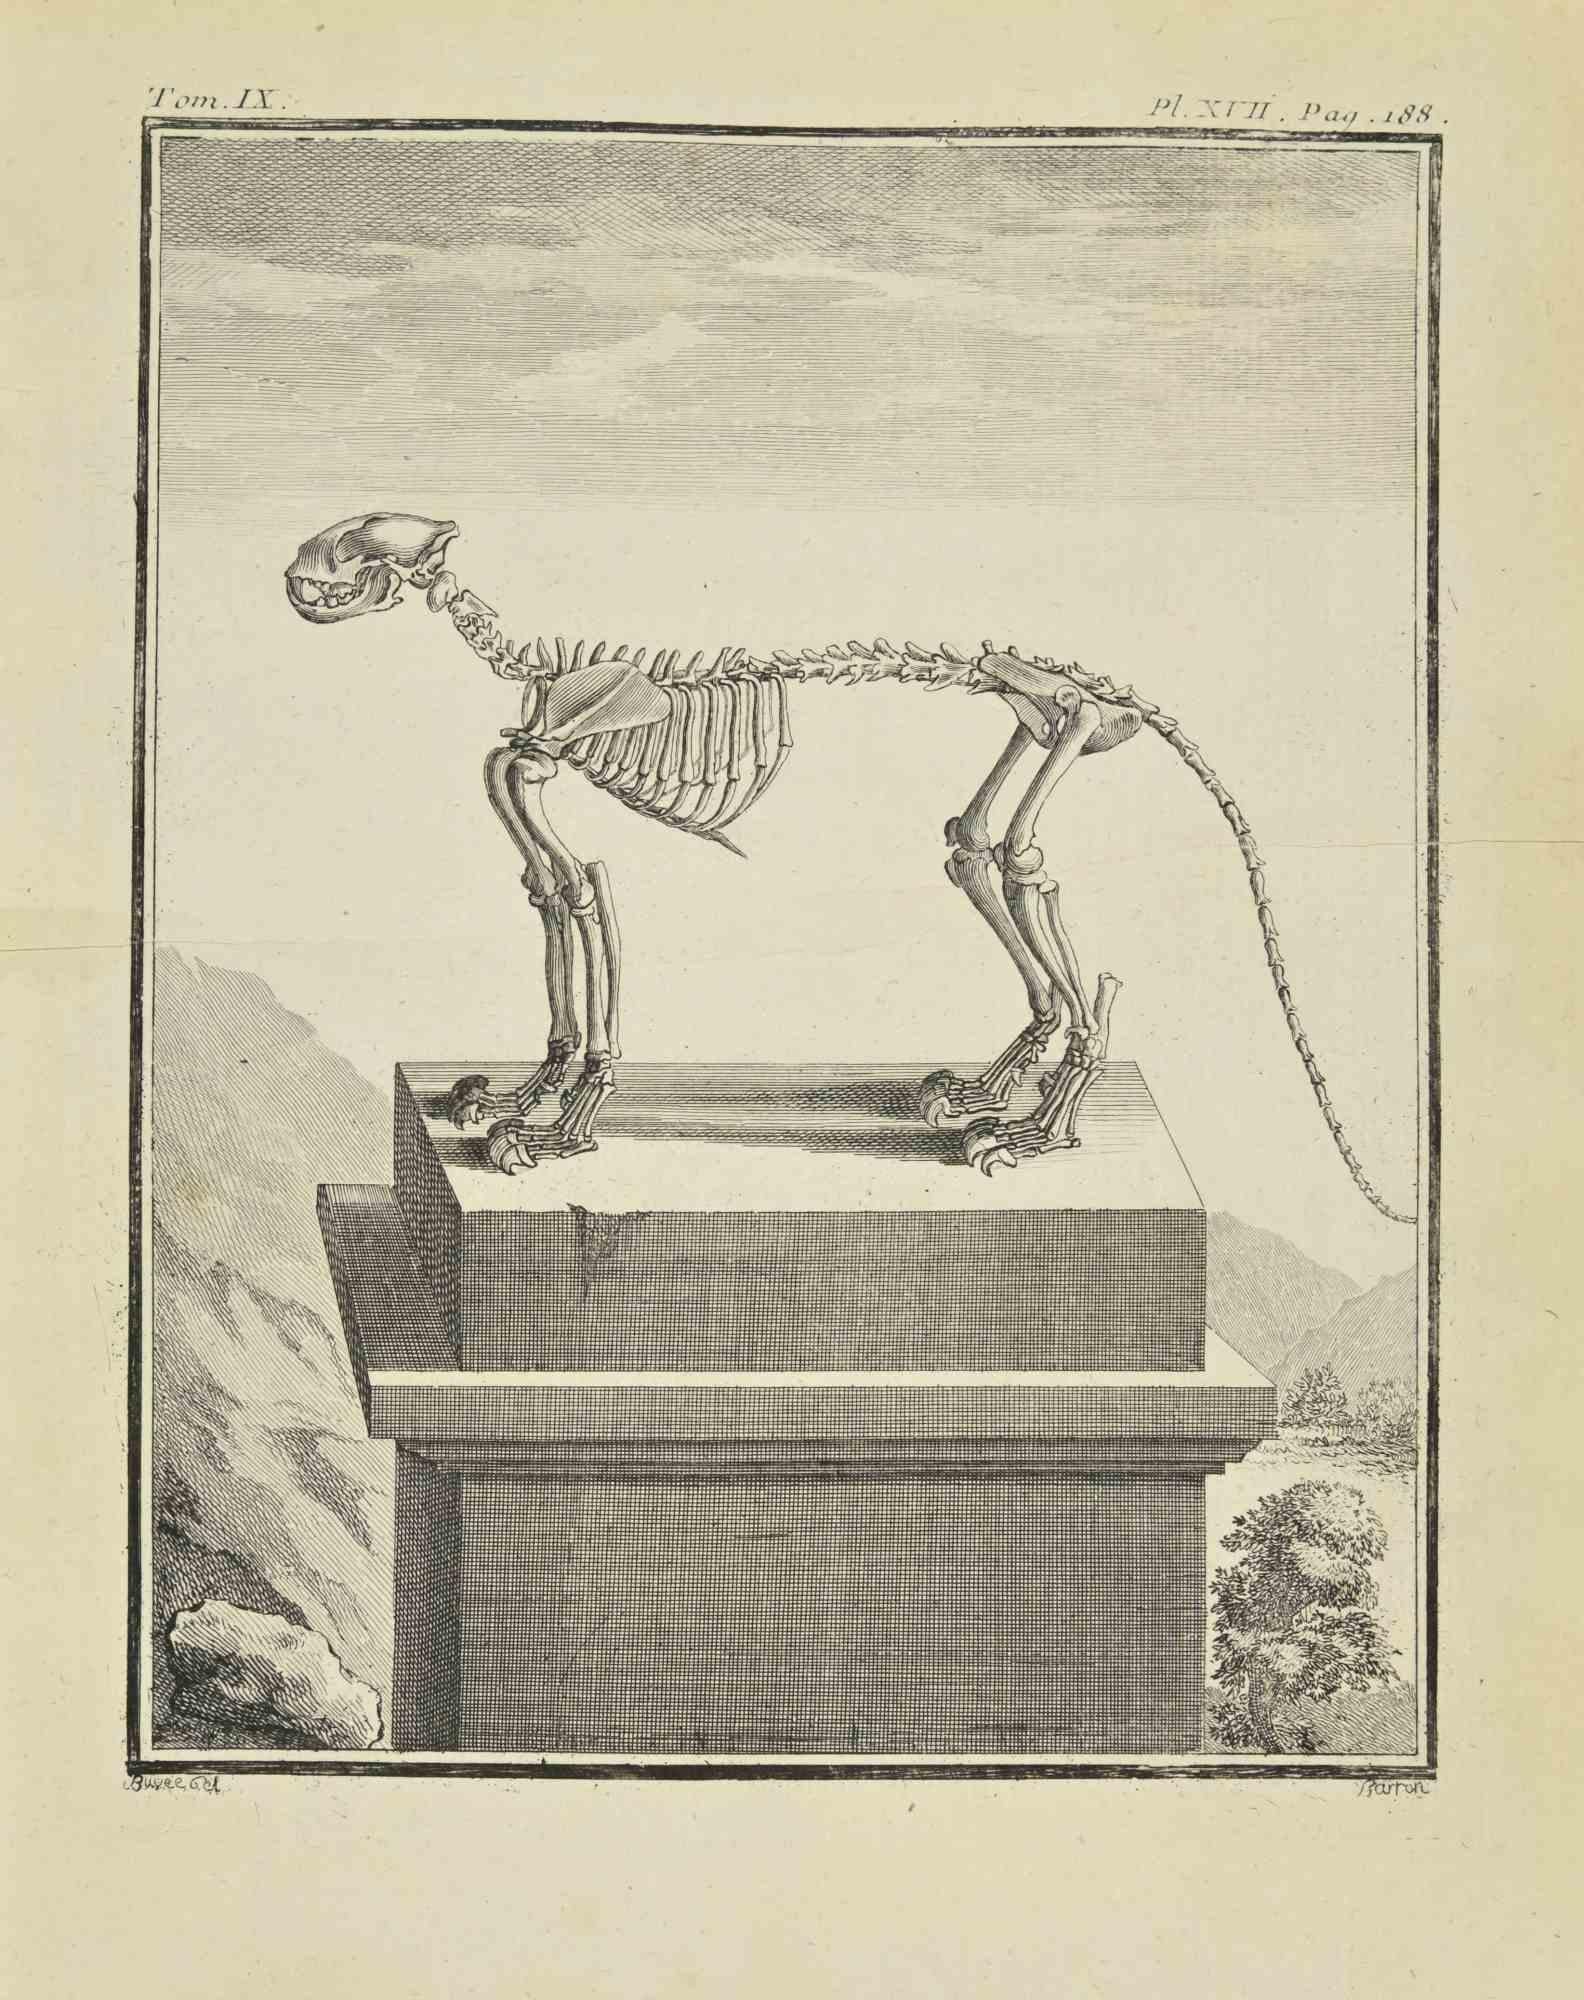 The Skeleton is an etching realized by Jacques Baron in 1771.

The artwork Belongs to the suite "Histoire naturelle, générale et particulière avec la description du Cabinet du Roi". Paris: Imprimerie Royale, 1749-1771. The Artist's signature is